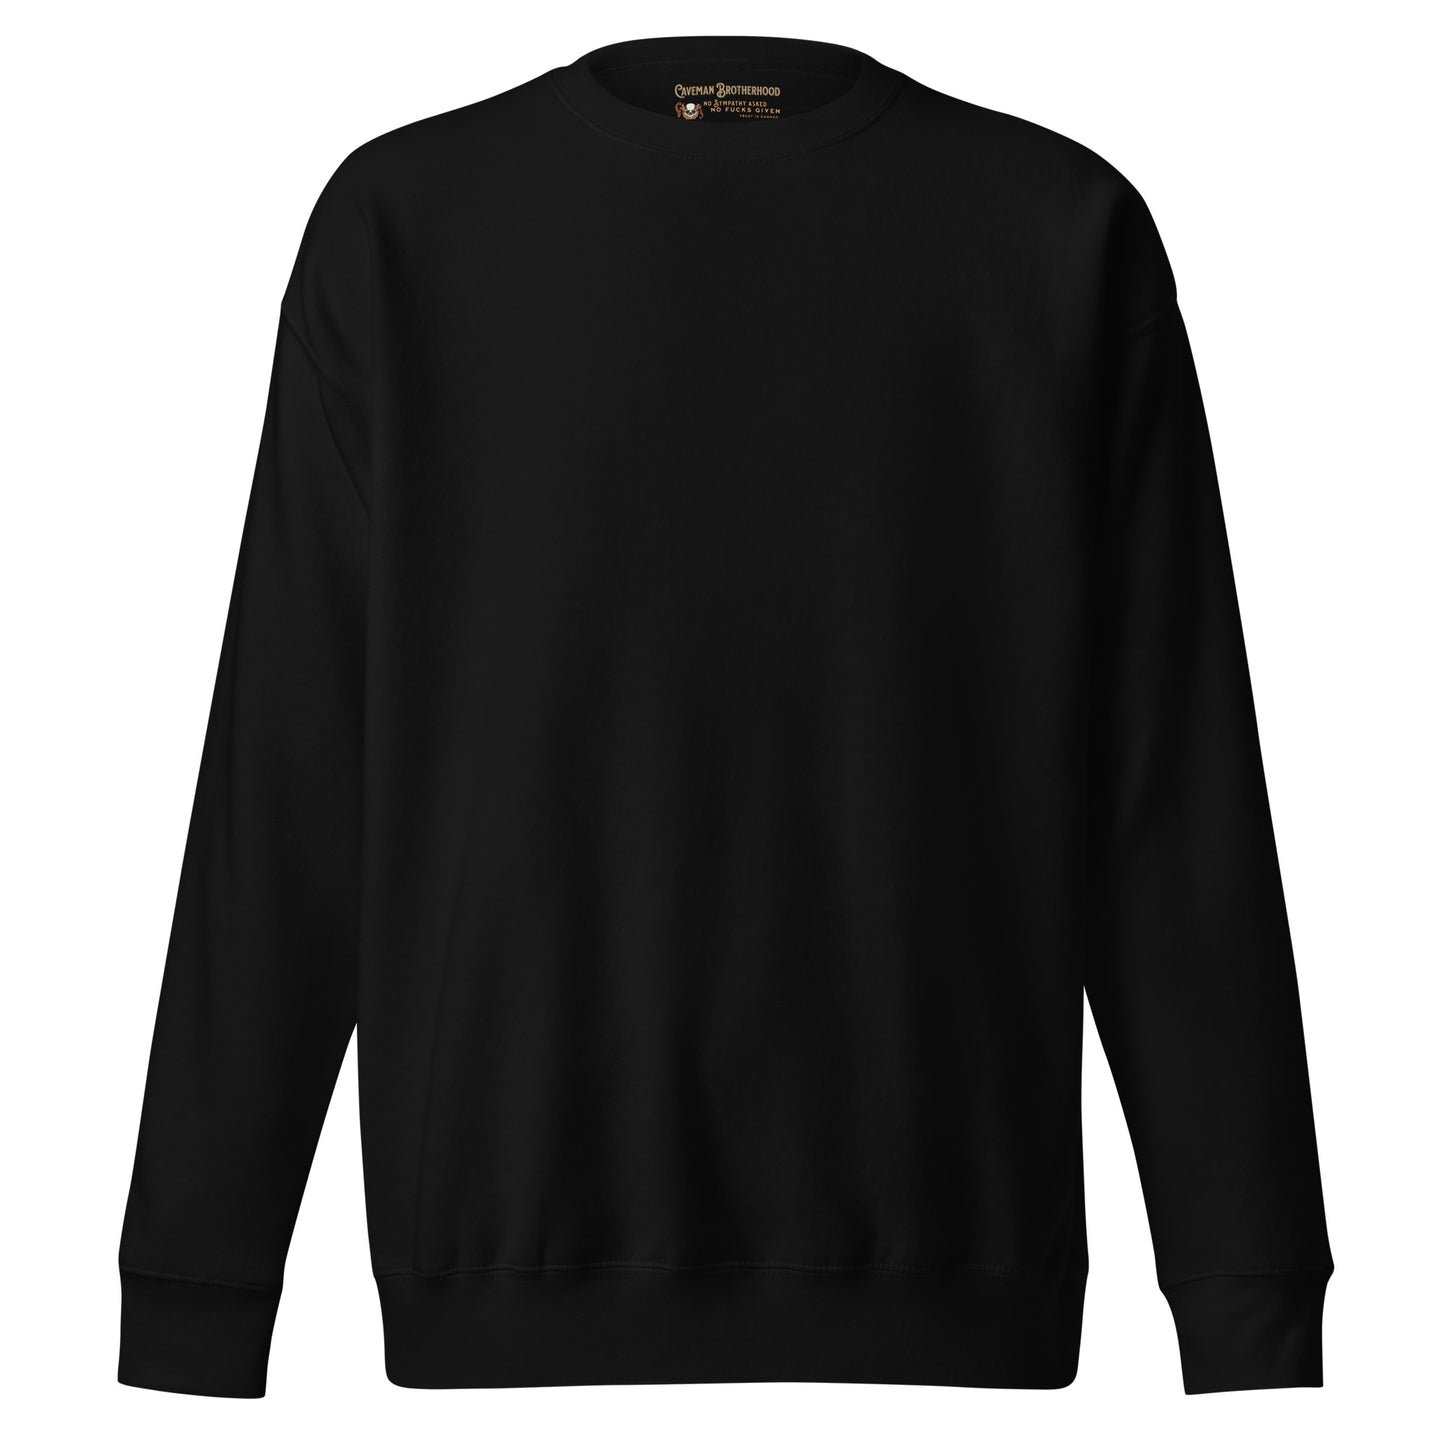 Ave Formosissima Premium Sweatshirt